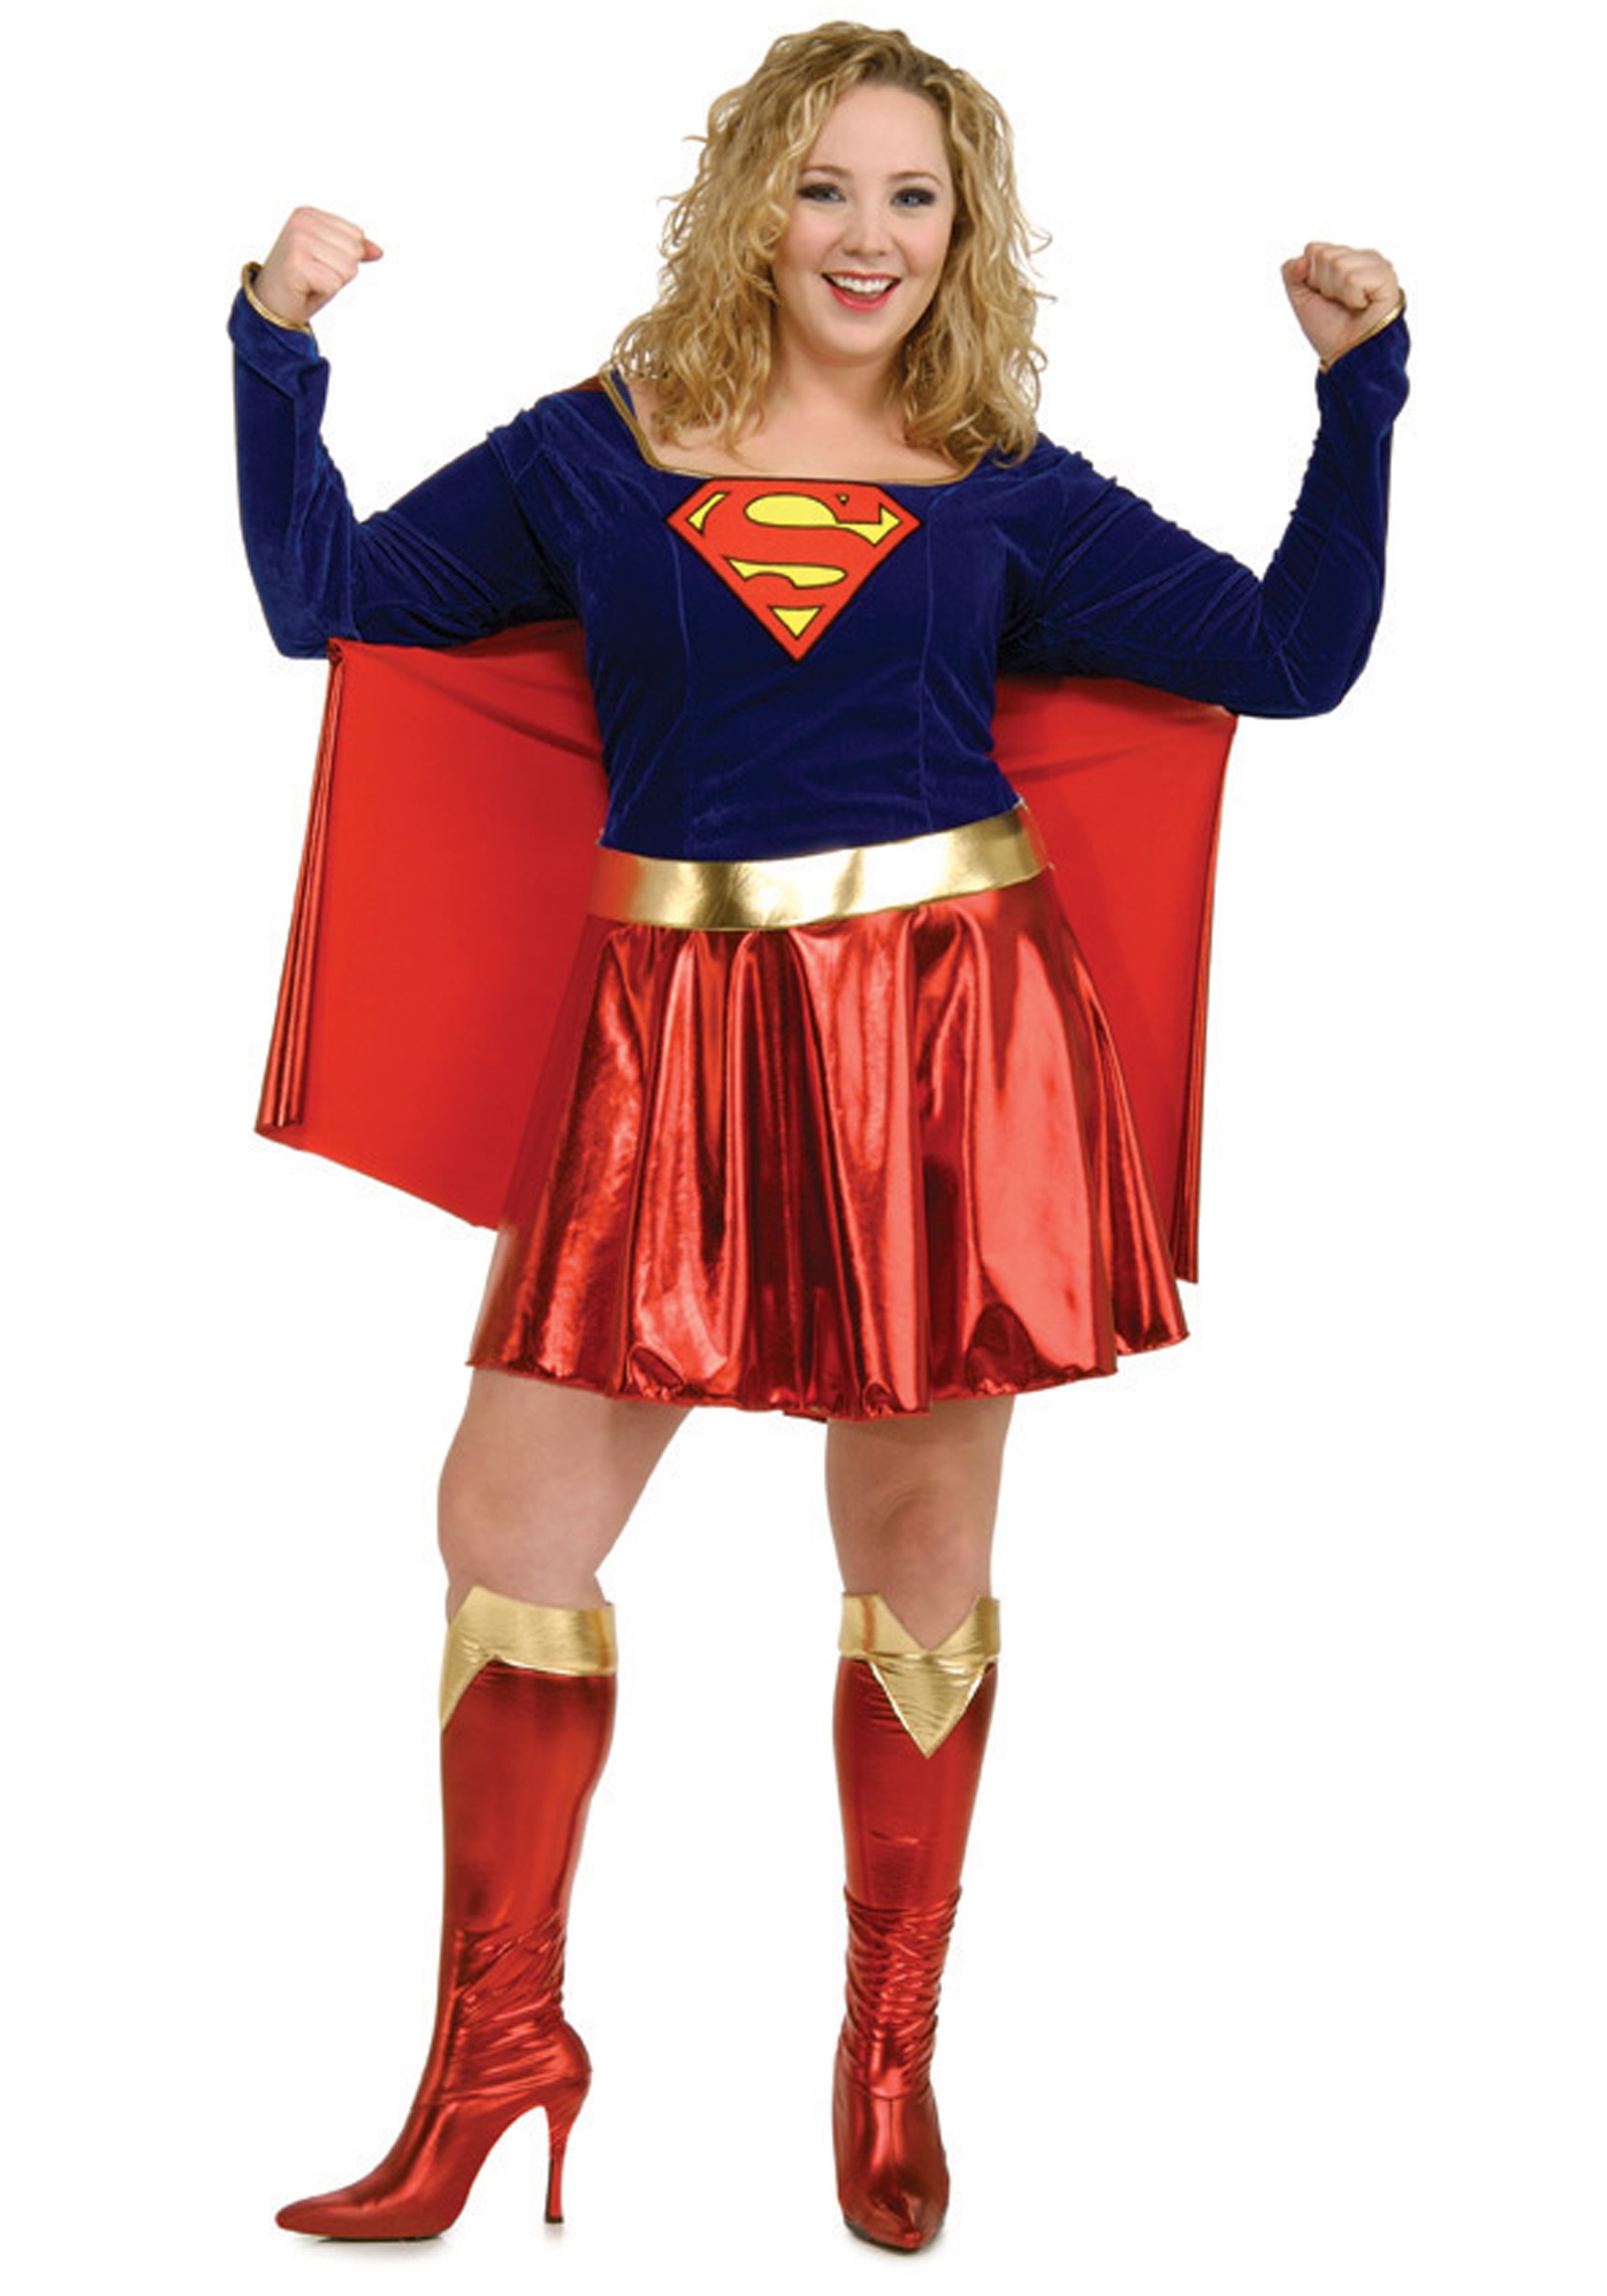 Image of Adult Plus Size Supergirl Costume ID RU17479-PL